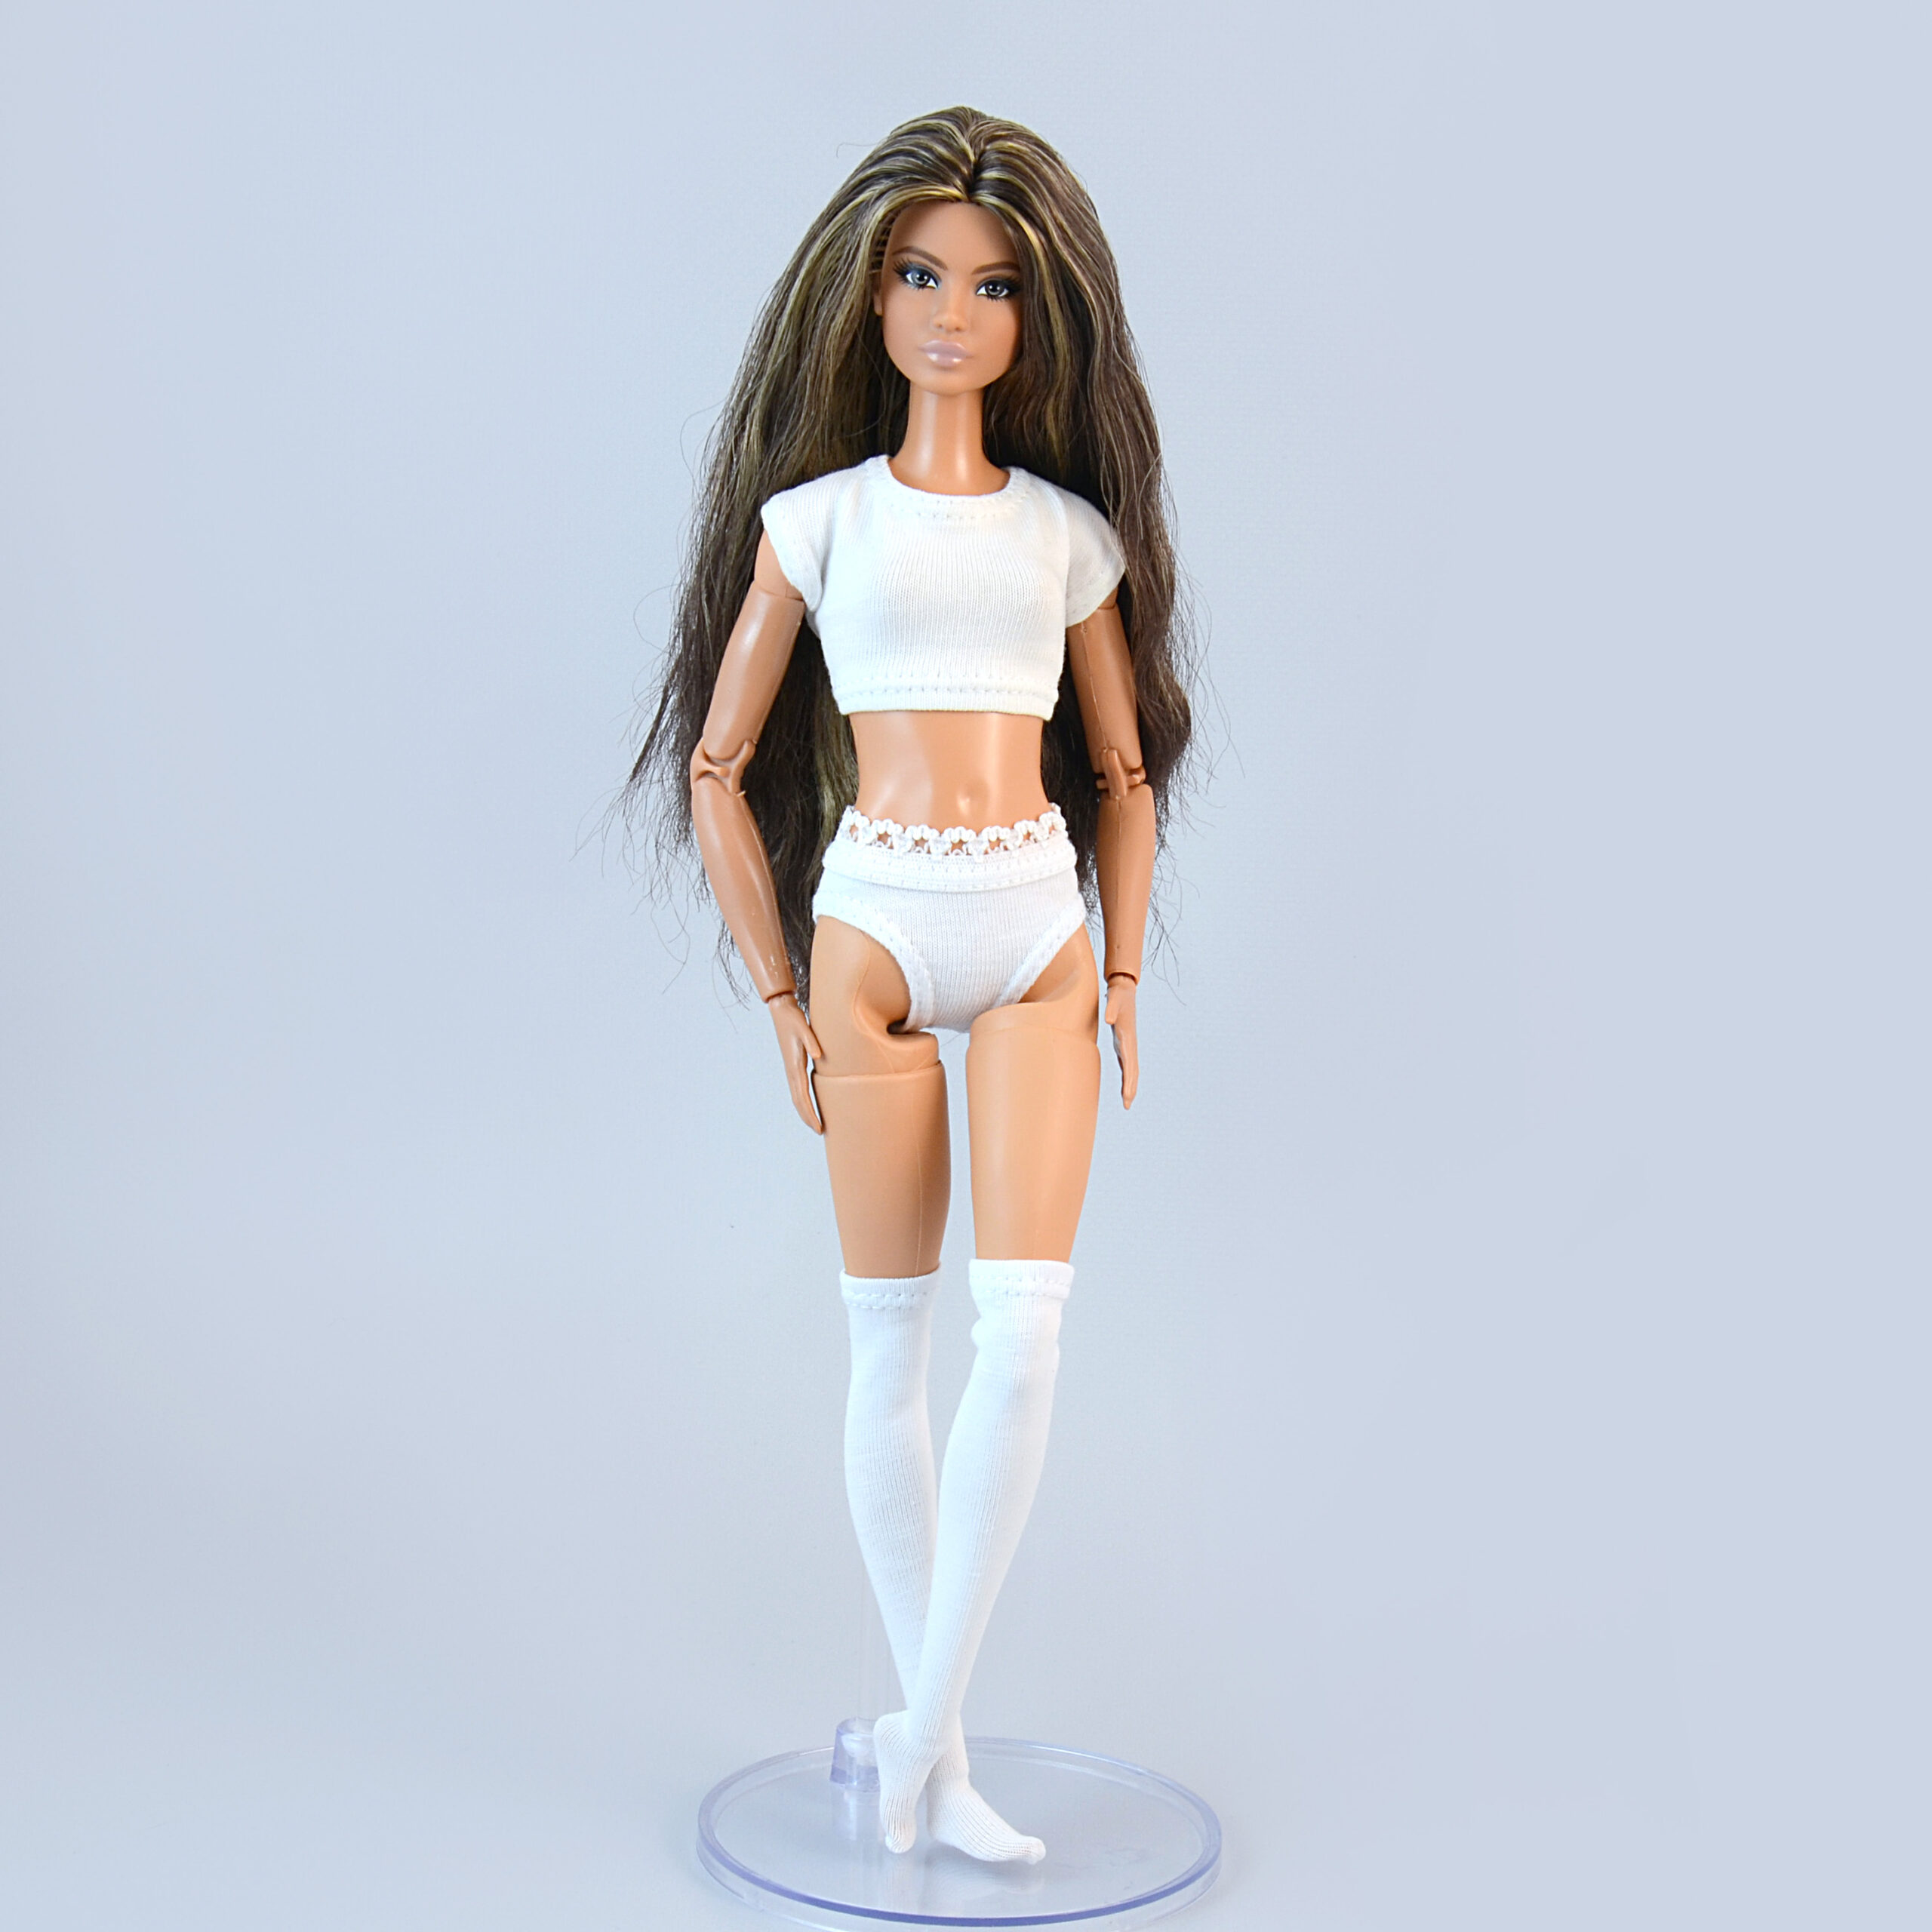 Blythe Doll Underwear, Underwear Barbie Doll, Barbie Accessories